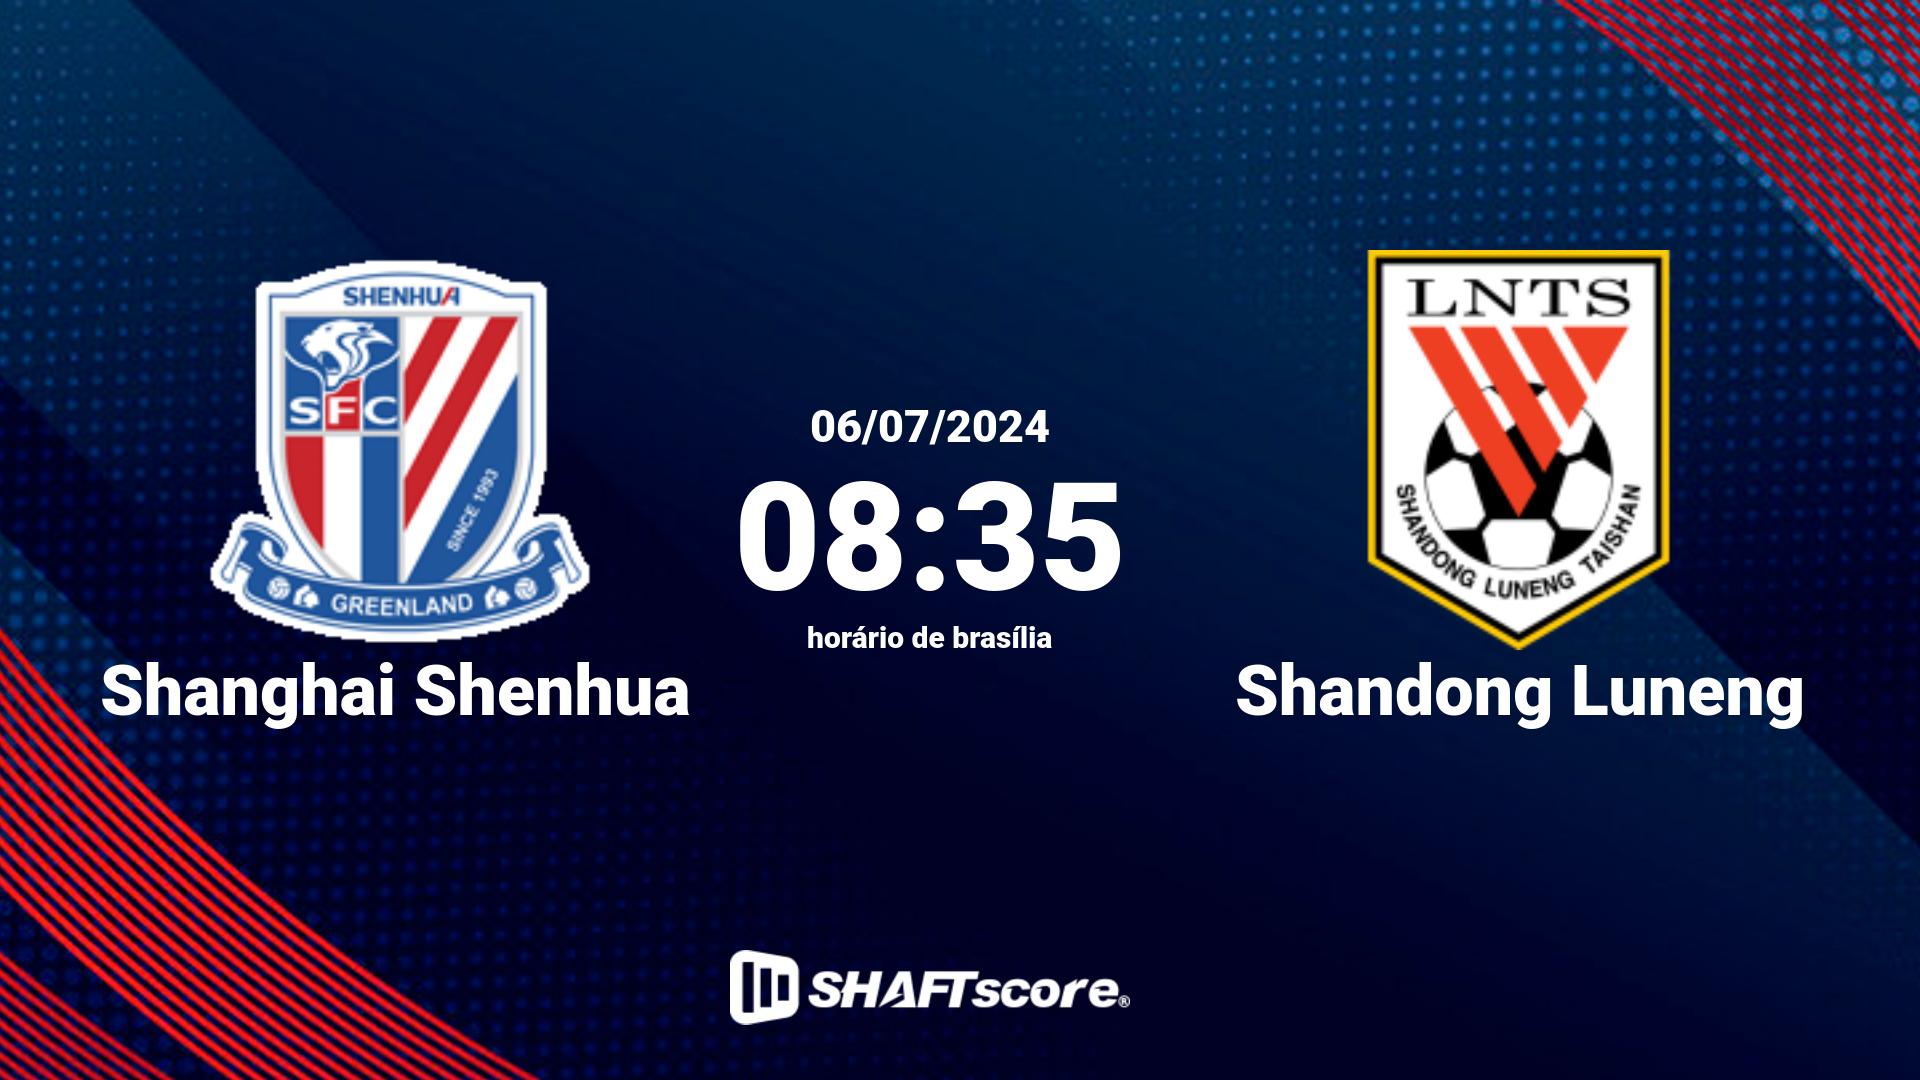 Estatísticas do jogo Shanghai Shenhua vs Shandong Luneng 06.07 08:35